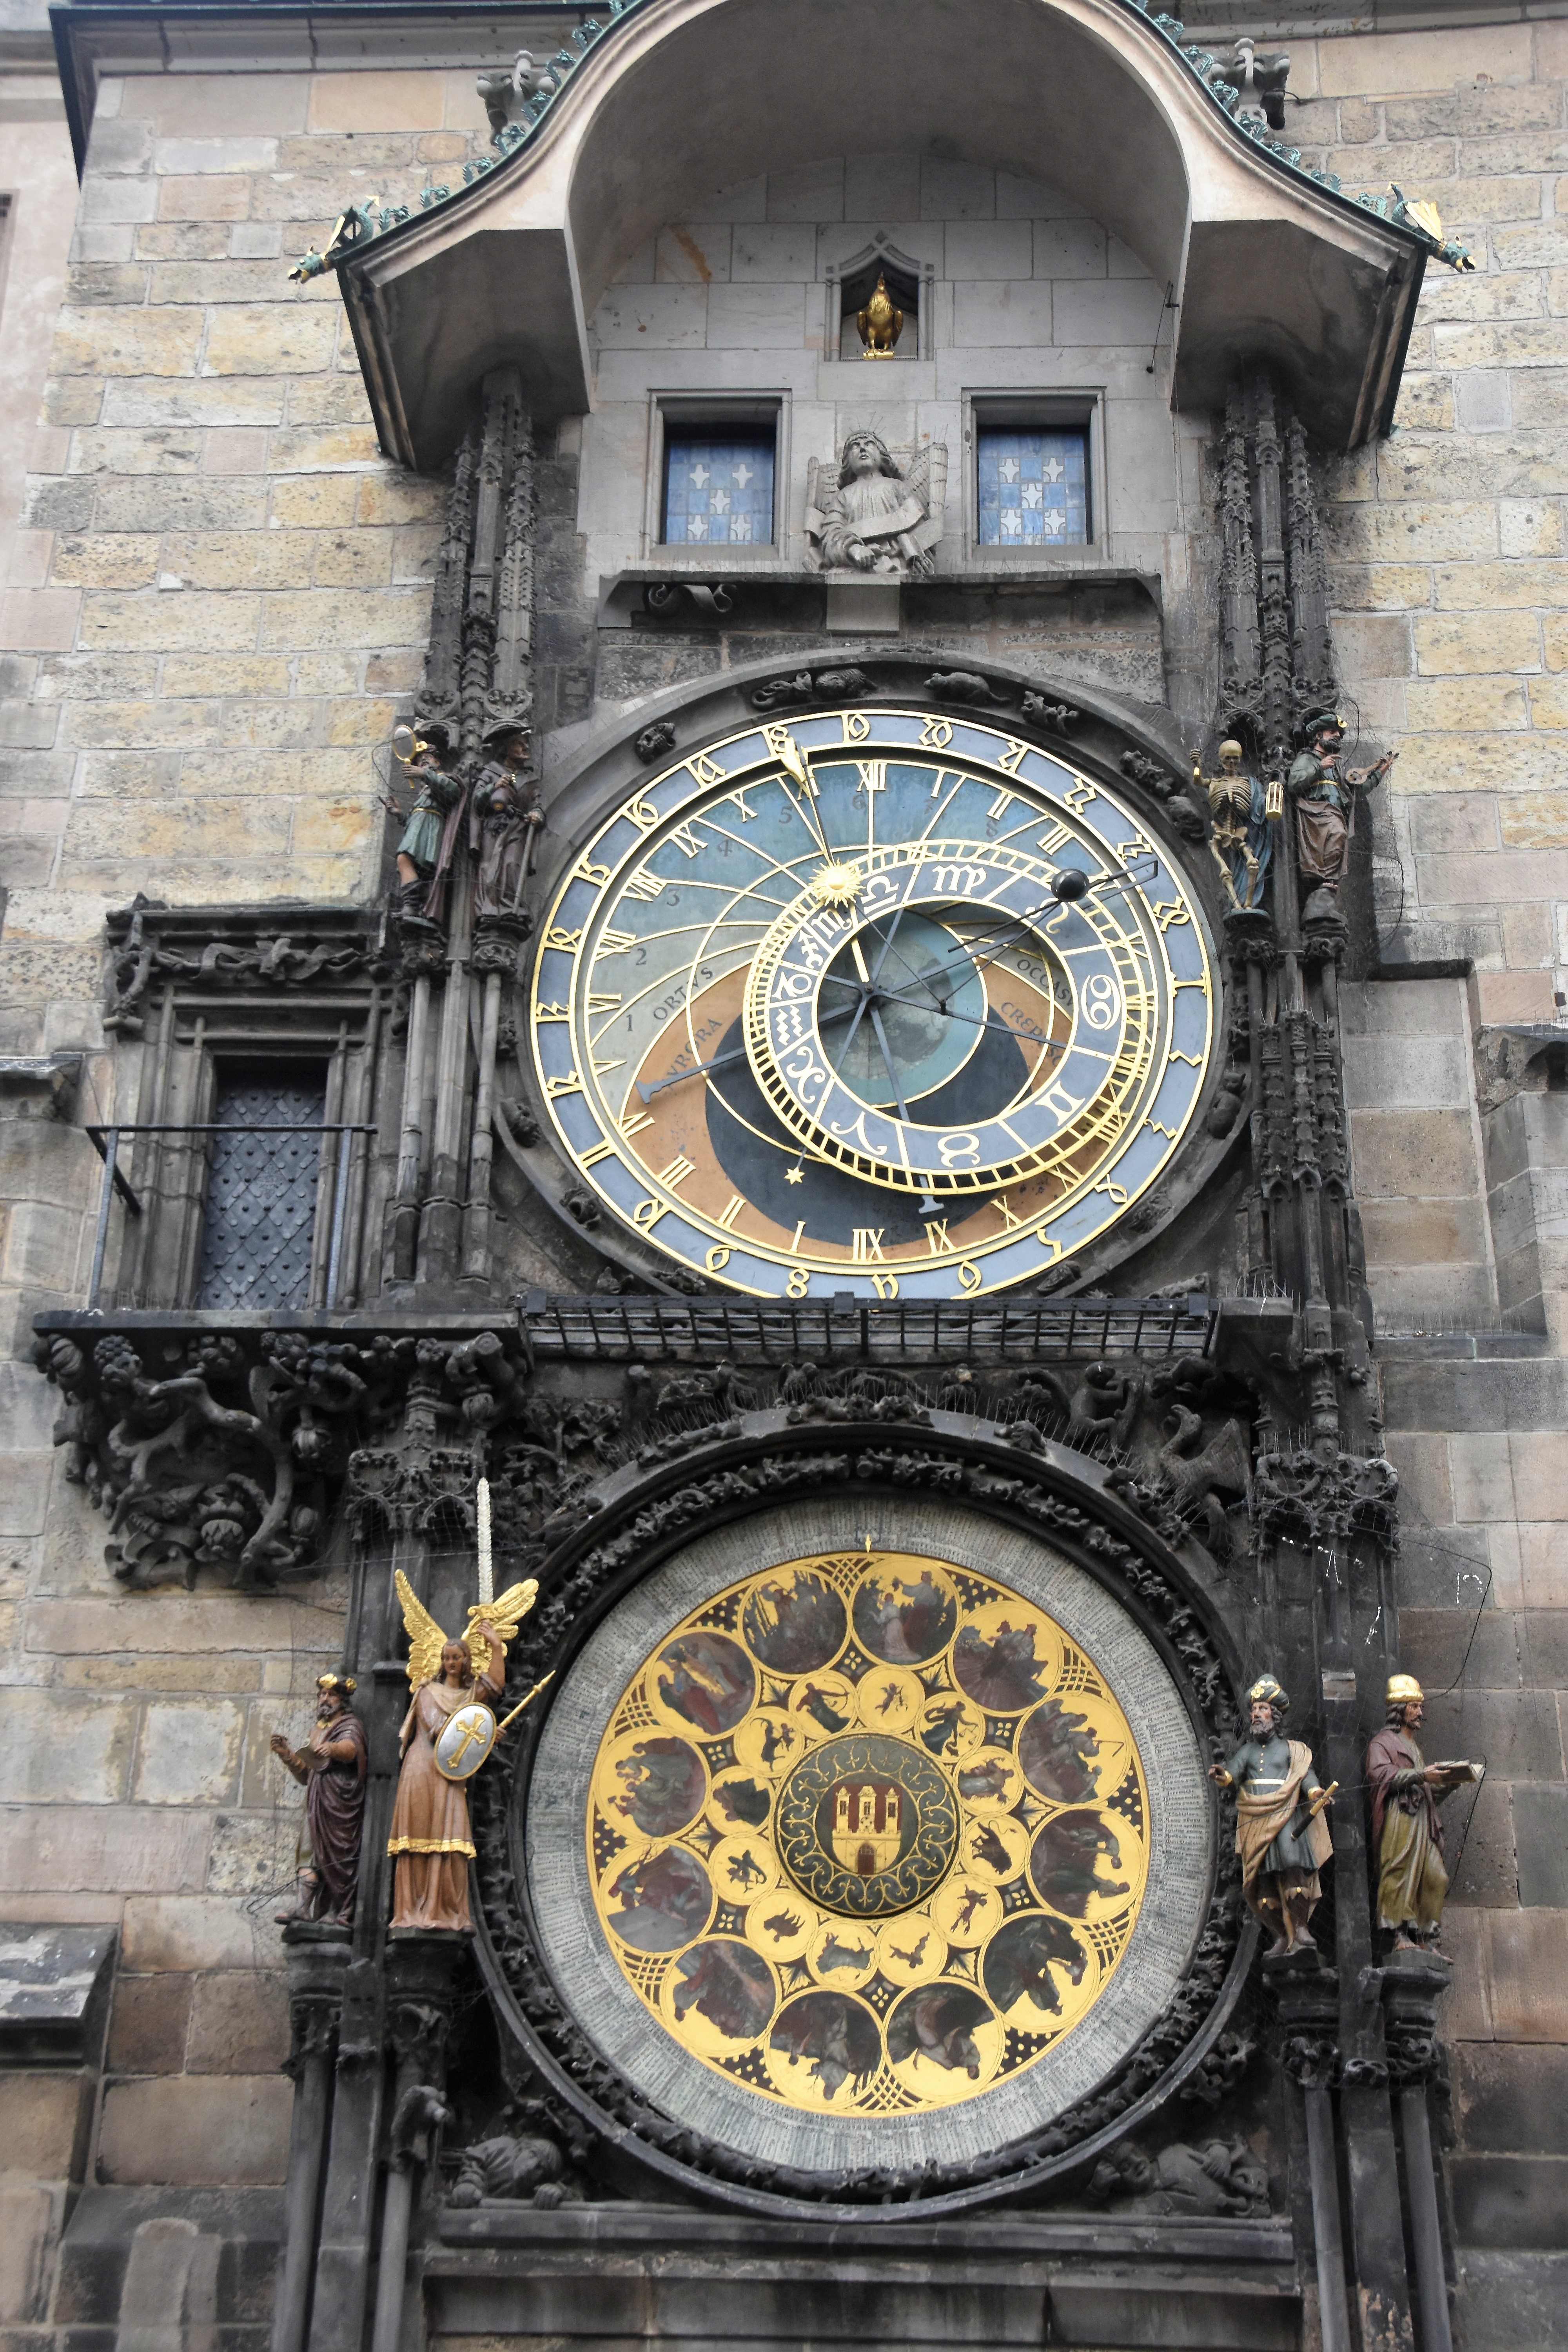 Astronomische Uhr am Altstädter Rathausturm, Foto: © Manfred Isemeyer